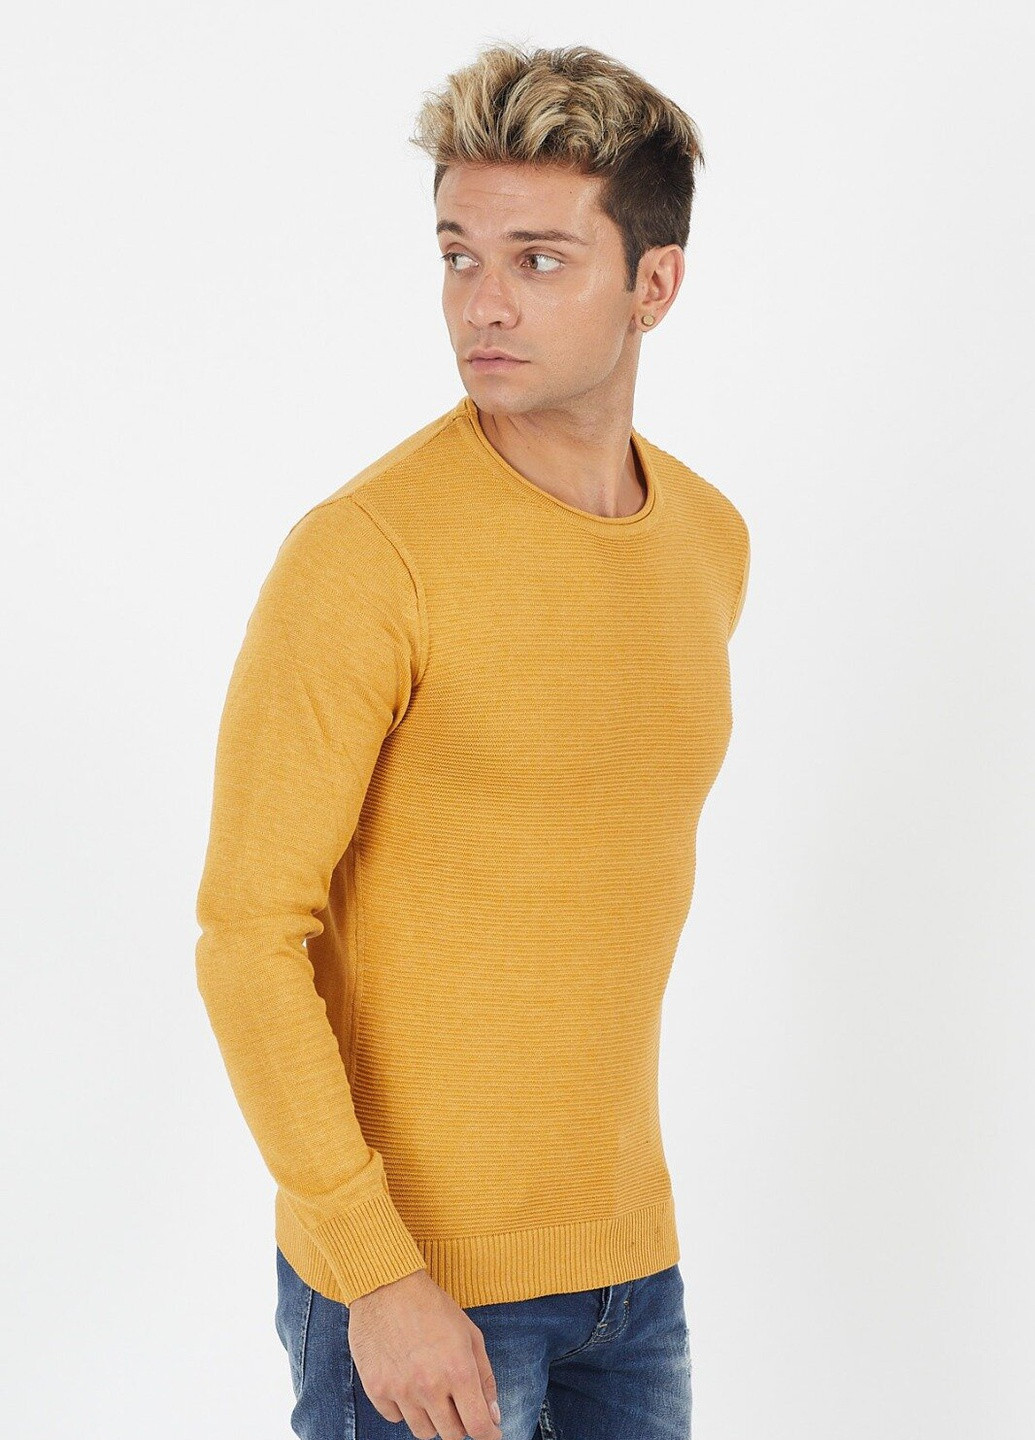 Горчичный демисезонный свитер 6655 xl (52) горчичный (2000903548768) Figo